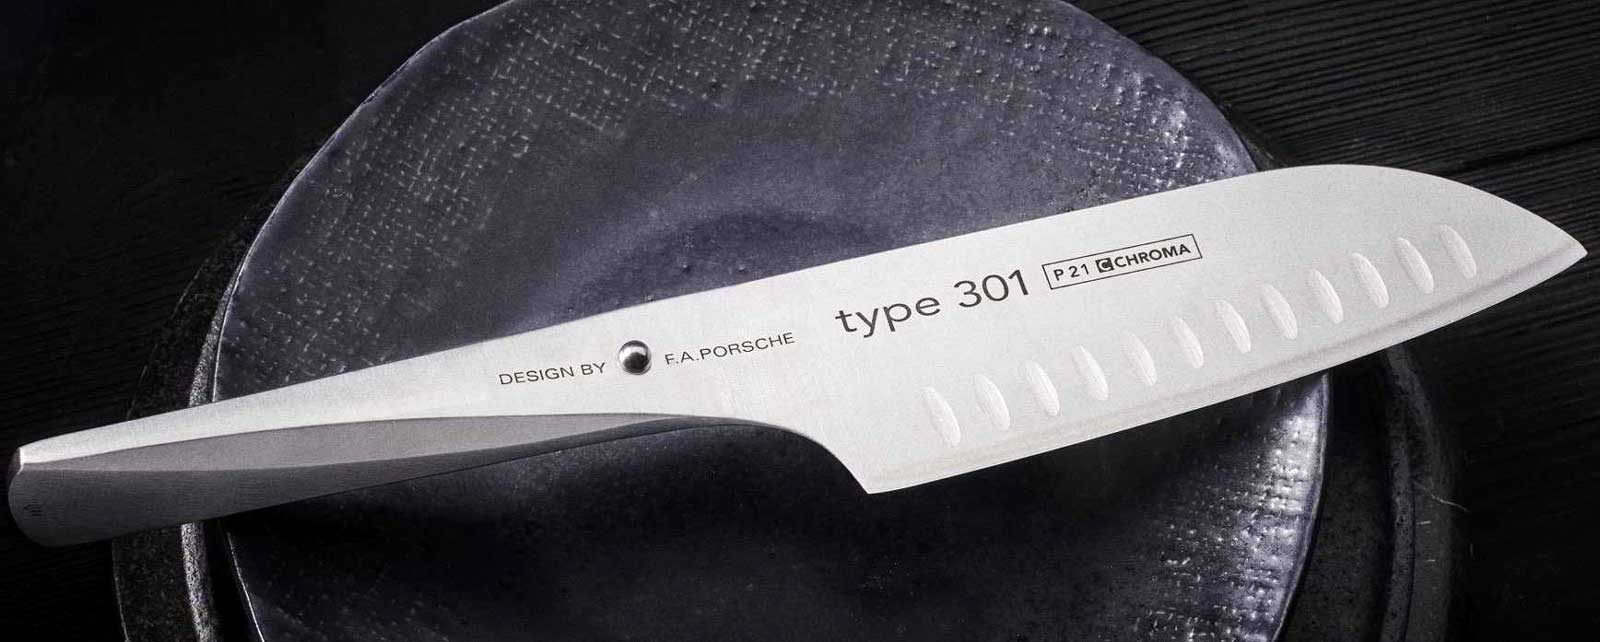 CHROMA tipo 301 - Design de FA Porsche - faca de chef Estas facas inovadoras Tipo 301, desenhadas pela empresa de design FA Porsche, abrem um novo capitulo no desenvolvimento de facas de cozinha.